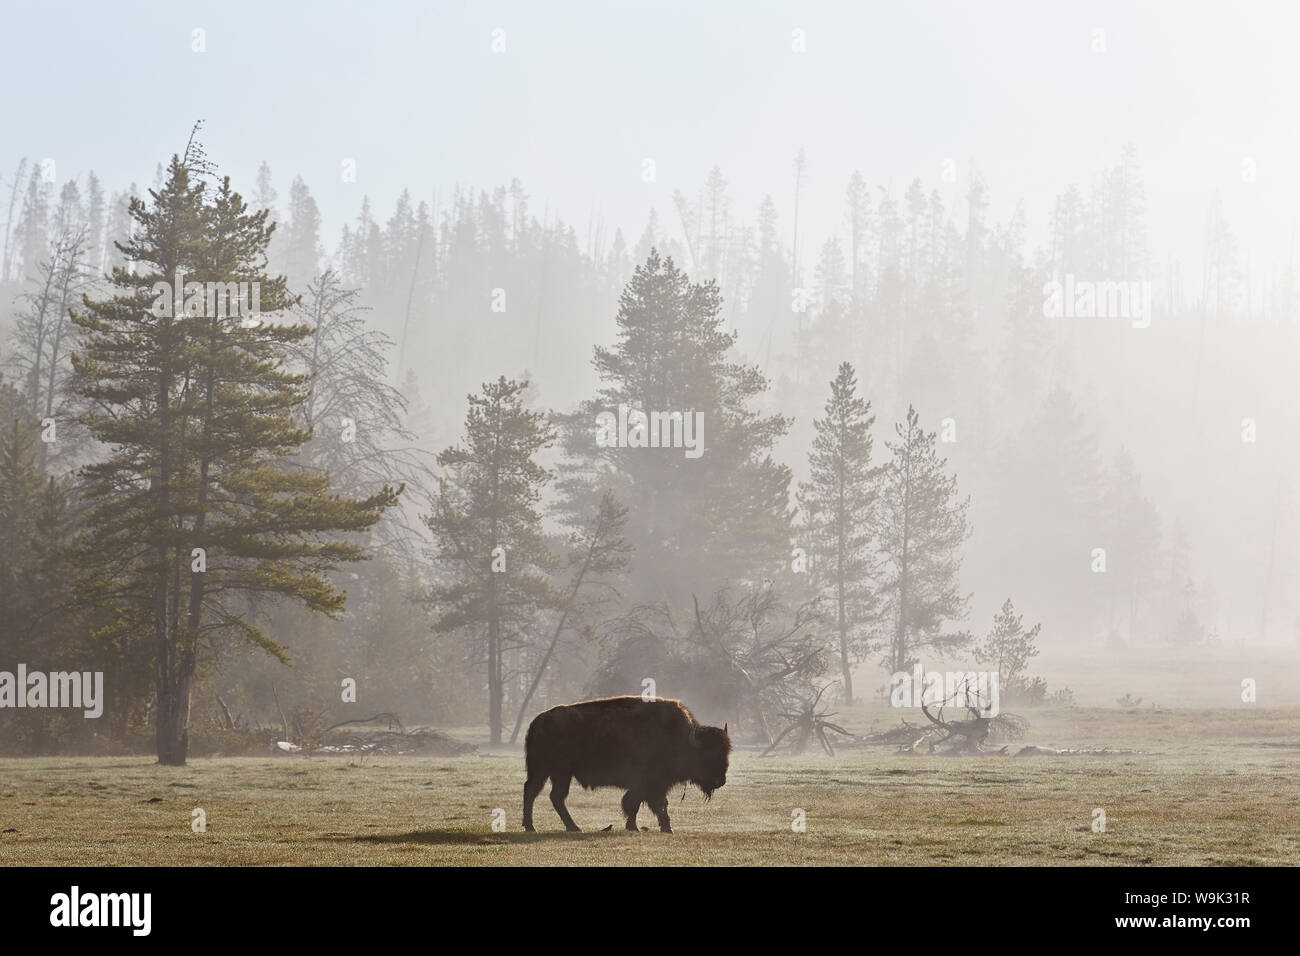 El bisonte (Bison bison) en niebla, el Parque Nacional de Yellowstone, Sitio del Patrimonio Mundial de la UNESCO, Wyoming, Estados Unidos de América, América del Norte Foto de stock